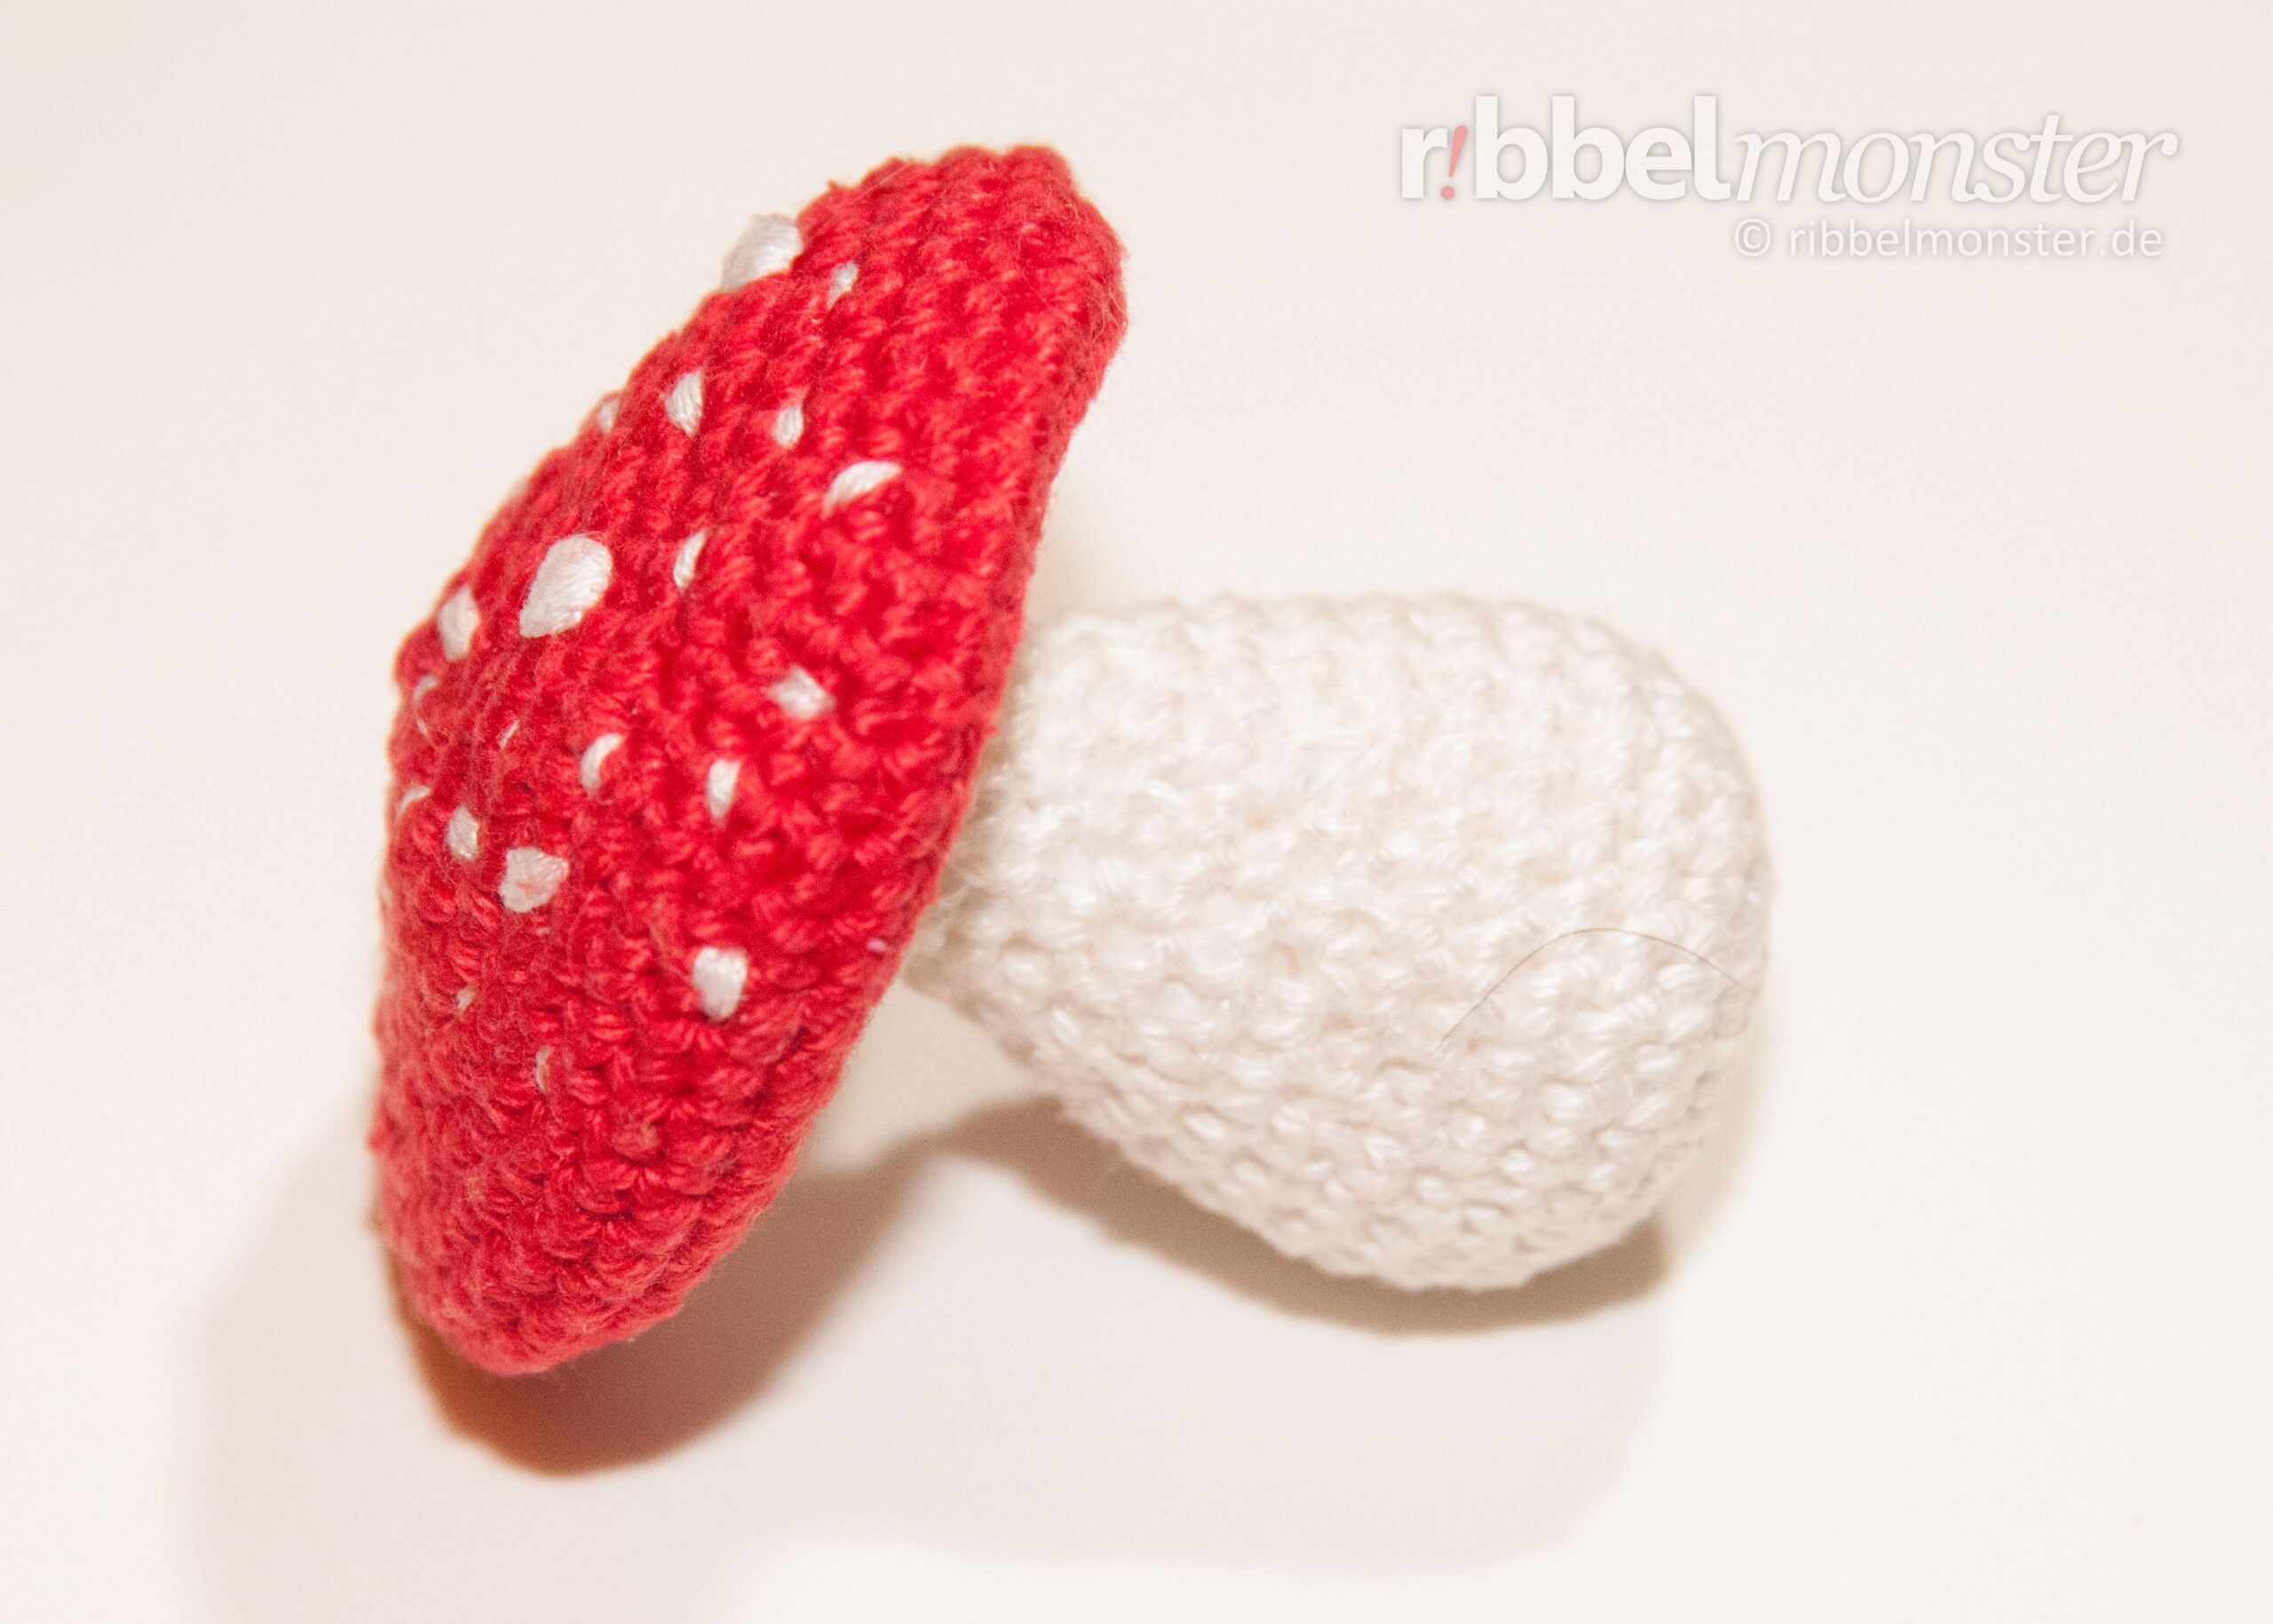 Amigurumi – Crochet Big Toadstool “Flage”